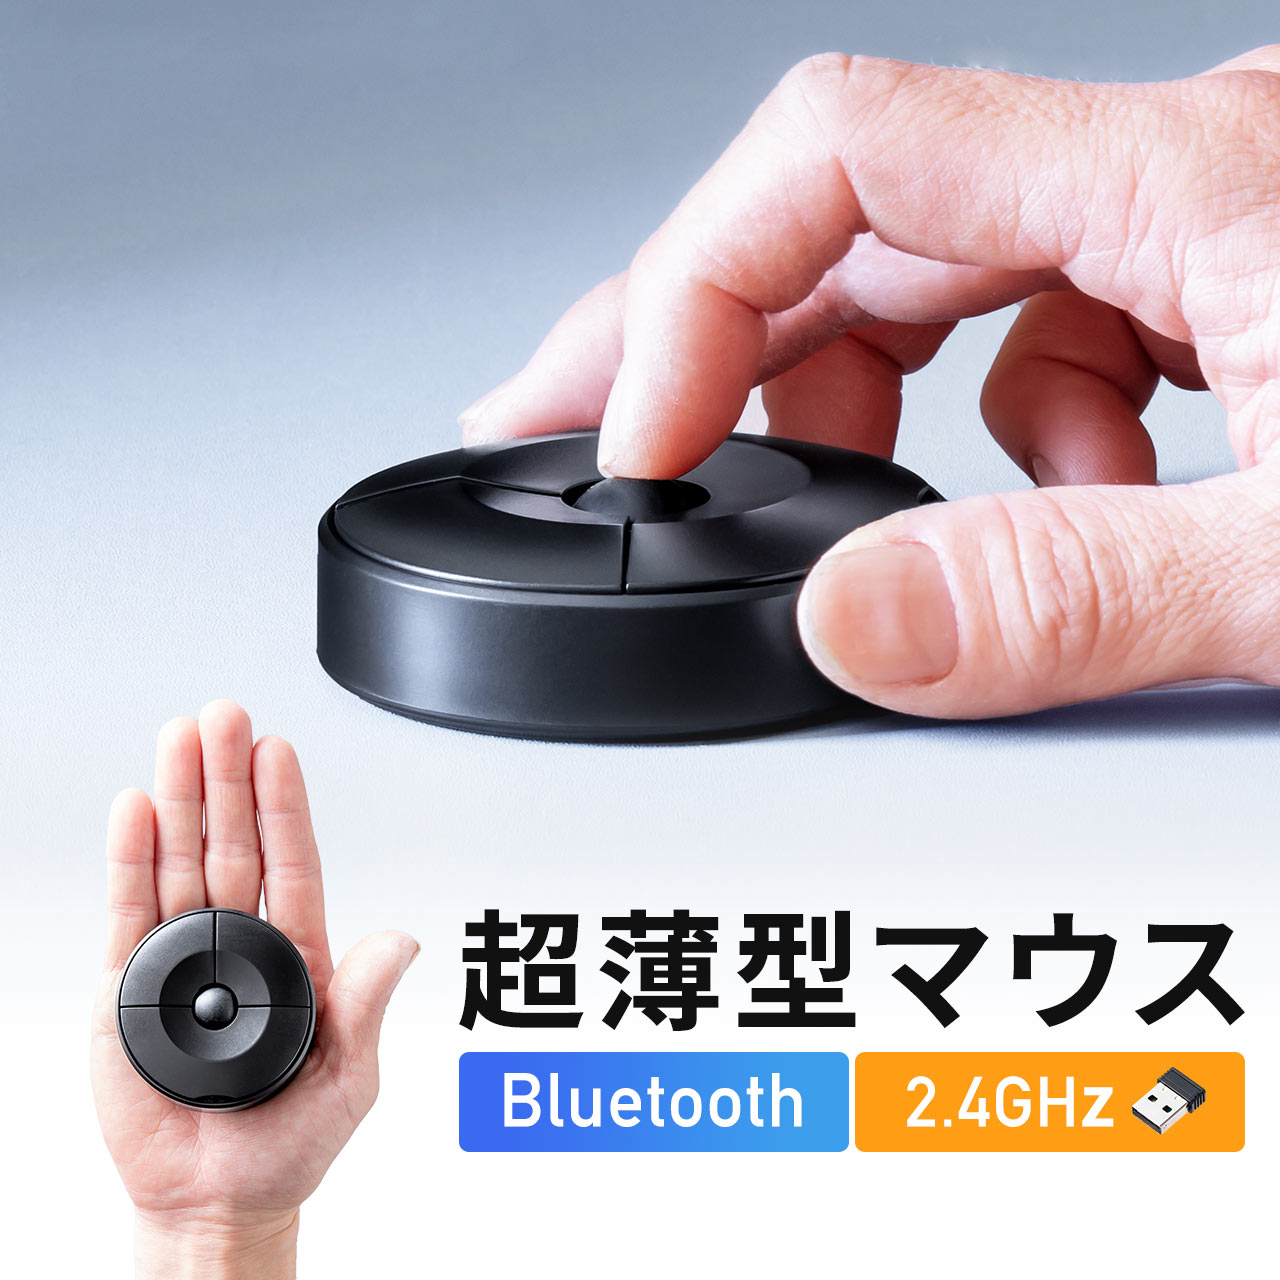 マウス Bluetoothマウス ワイヤレスマウス UFOマウス 円盤型 USB Aレシーバー Bluetooth 両対応 薄型 超小型 持ち運び 出張 コンパクト 乾電池式 400-MAWBT198BK